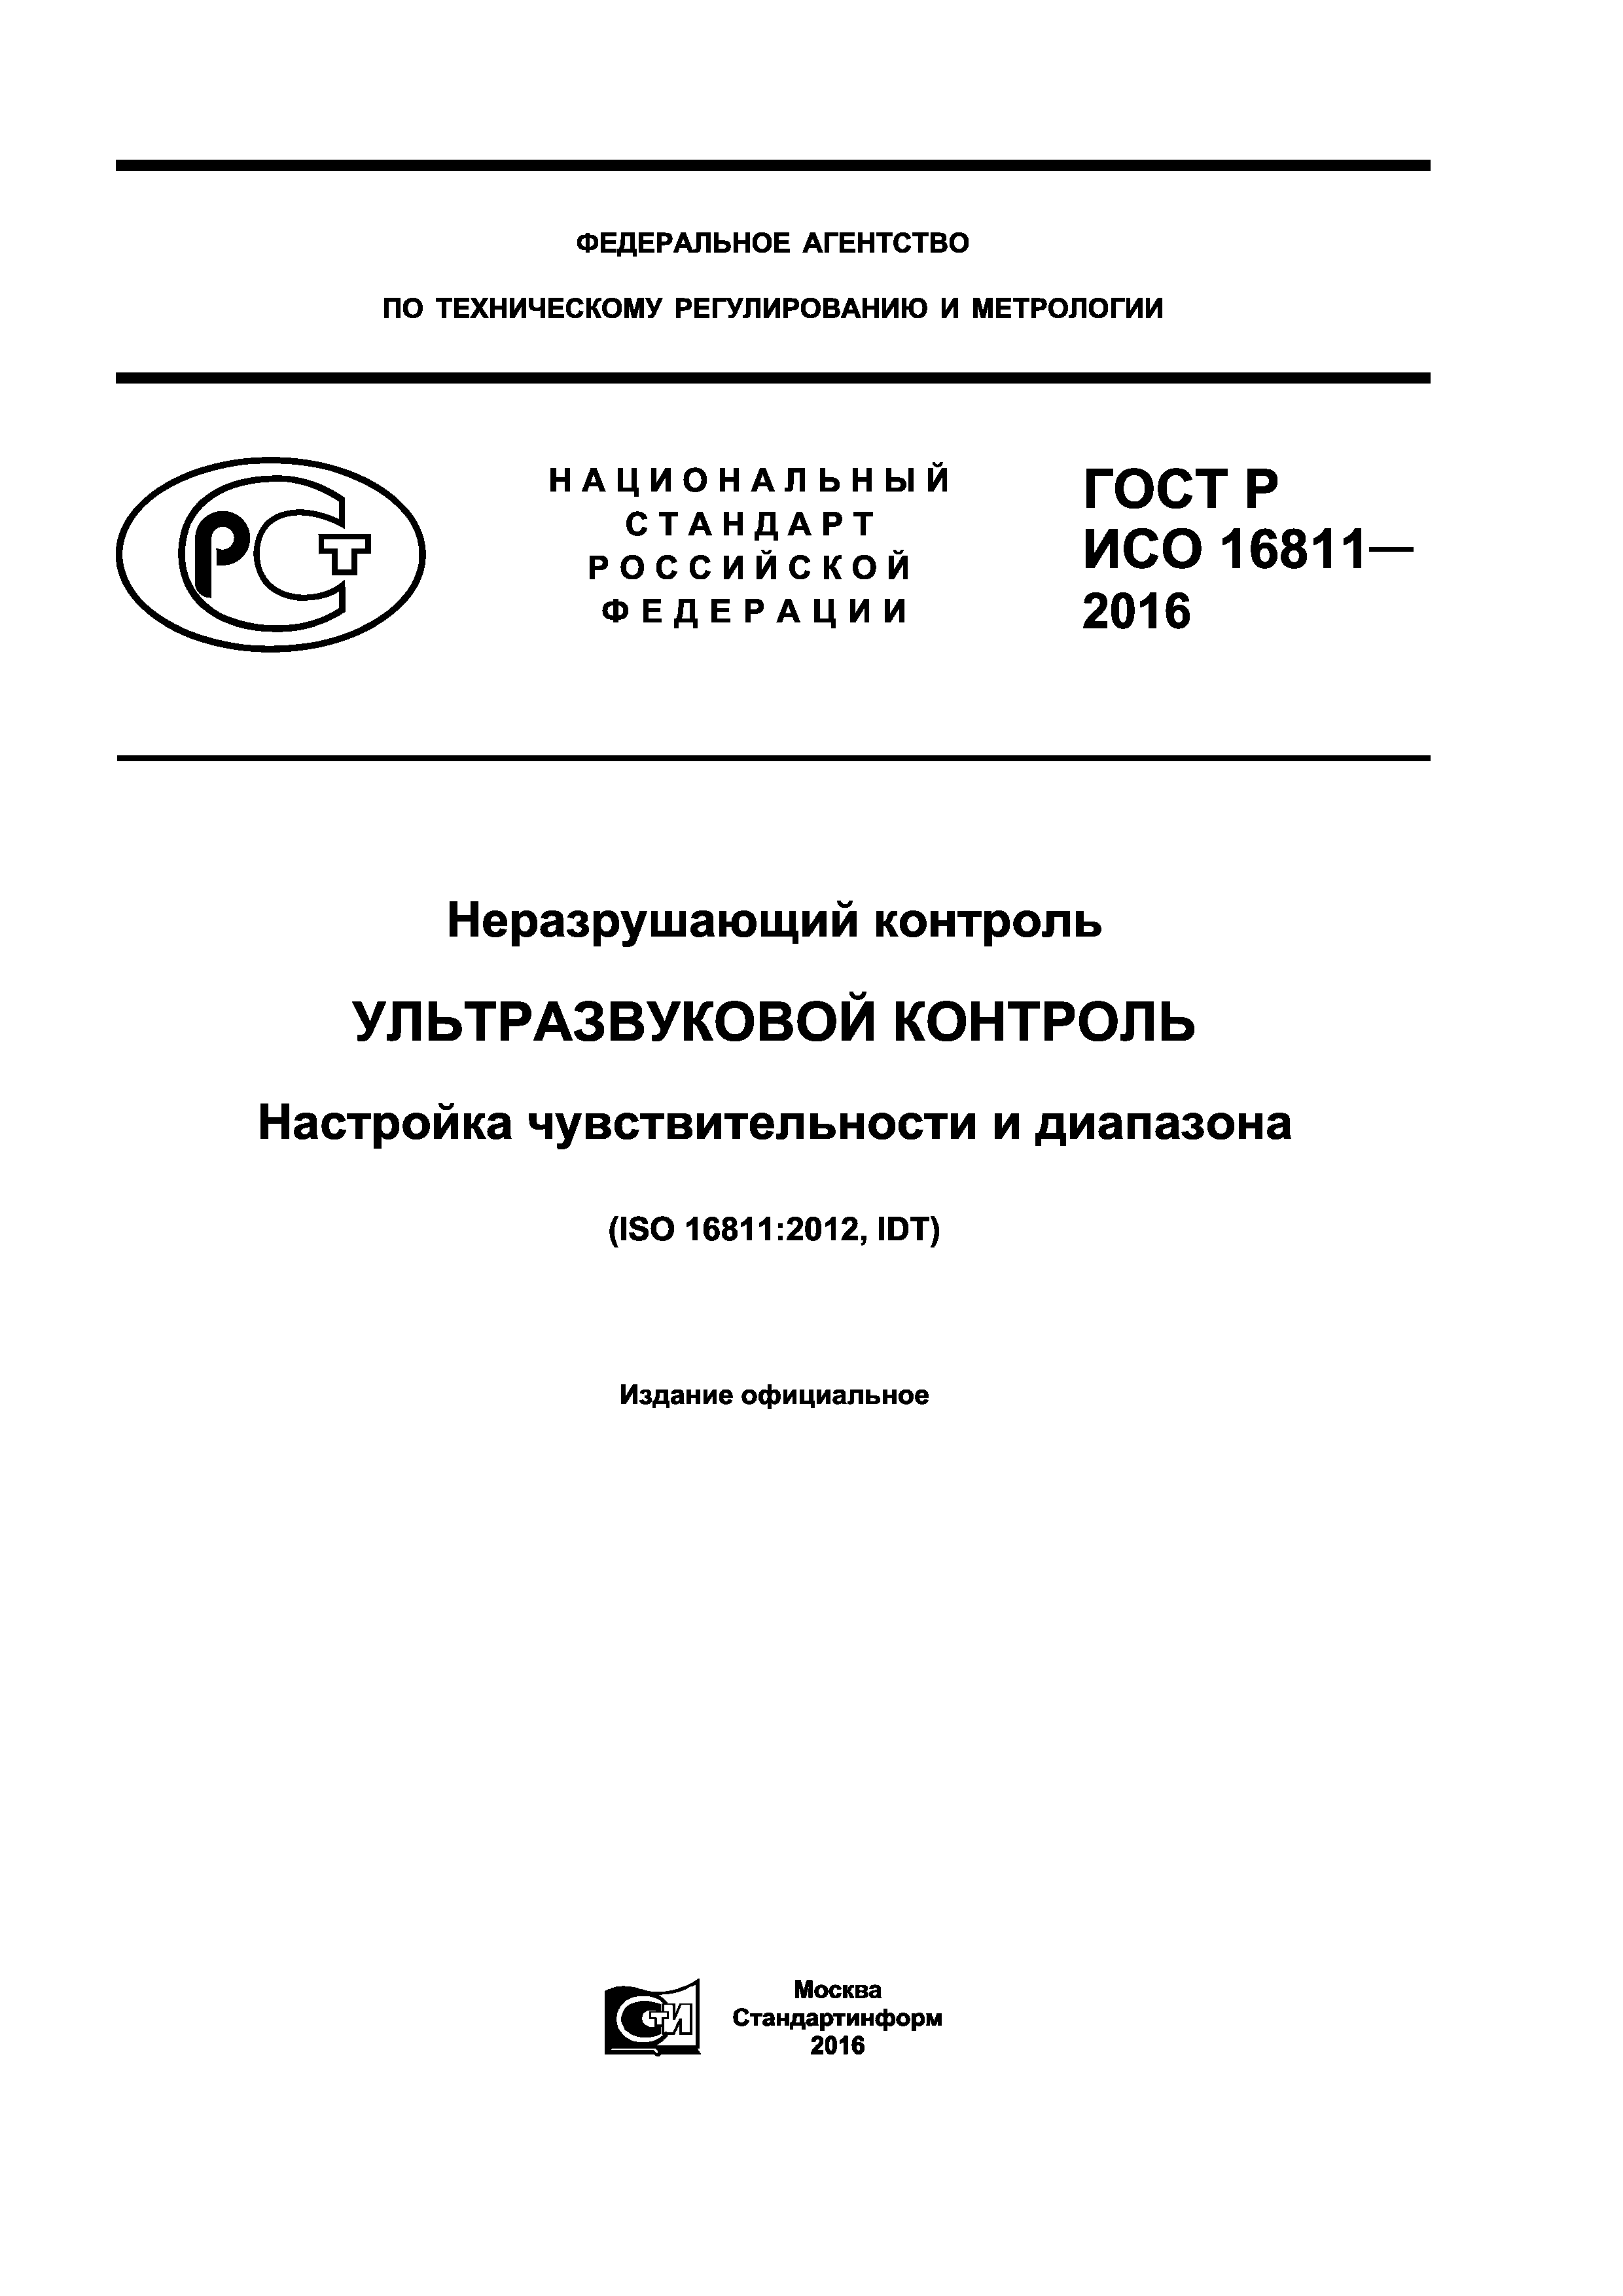 ГОСТ Р ИСО 16811-2016